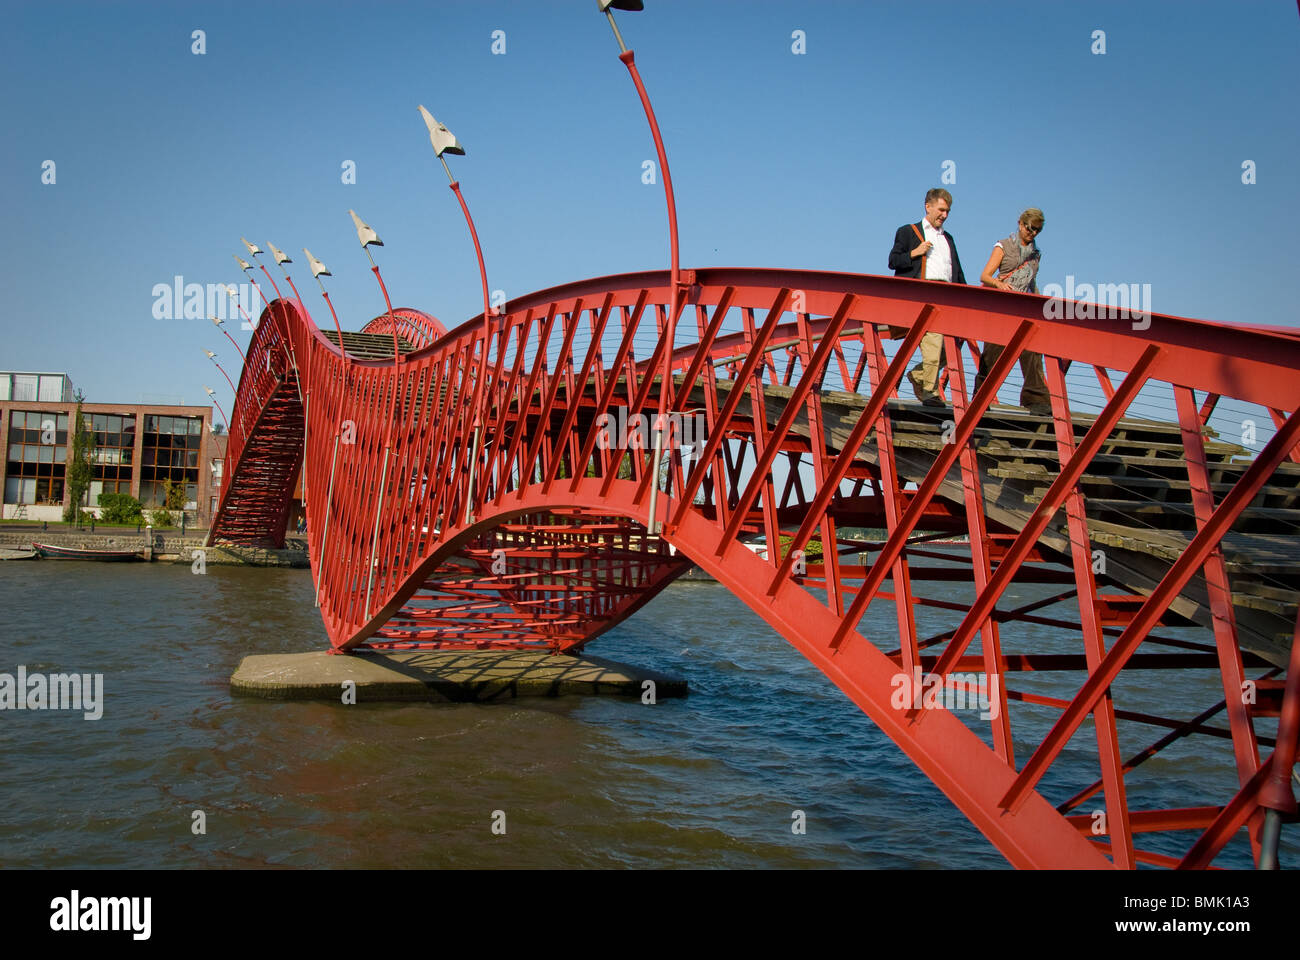 Amsterdam-Brücke Architektur moderne Menschen zu Fuß rot Niederlande Sporenburg Borneo Insel Hafen Oostelijk havengebied Stockfoto